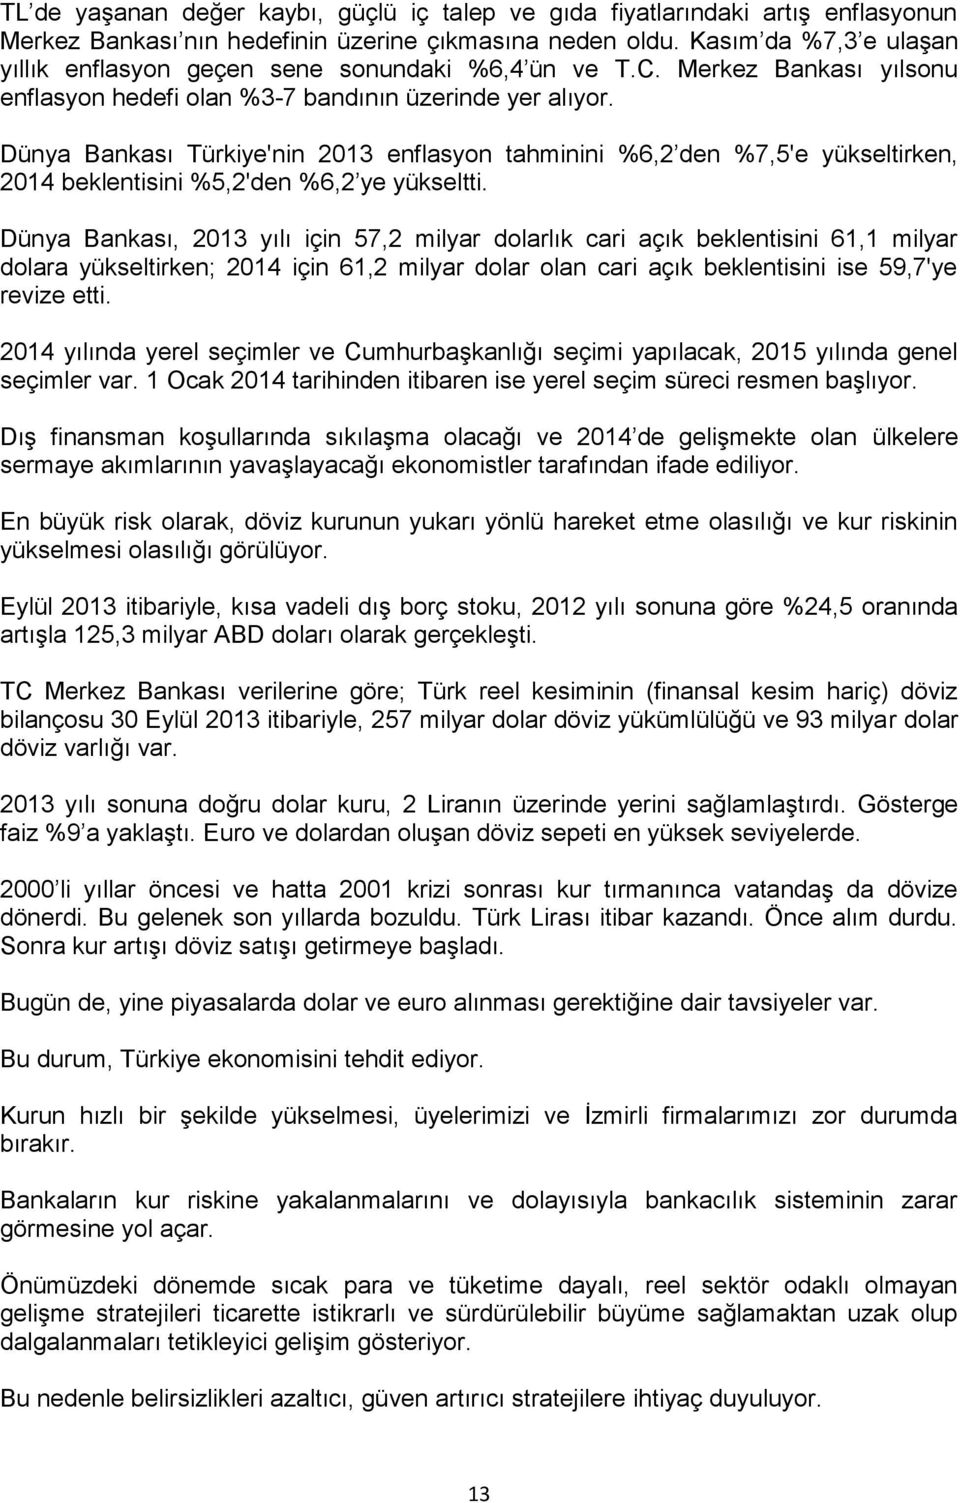 Dünya Bankası Türkiye'nin 2013 enflasyon tahminini %6,2 den %7,5'e yükseltirken, 2014 beklentisini %5,2'den %6,2 ye yükseltti.